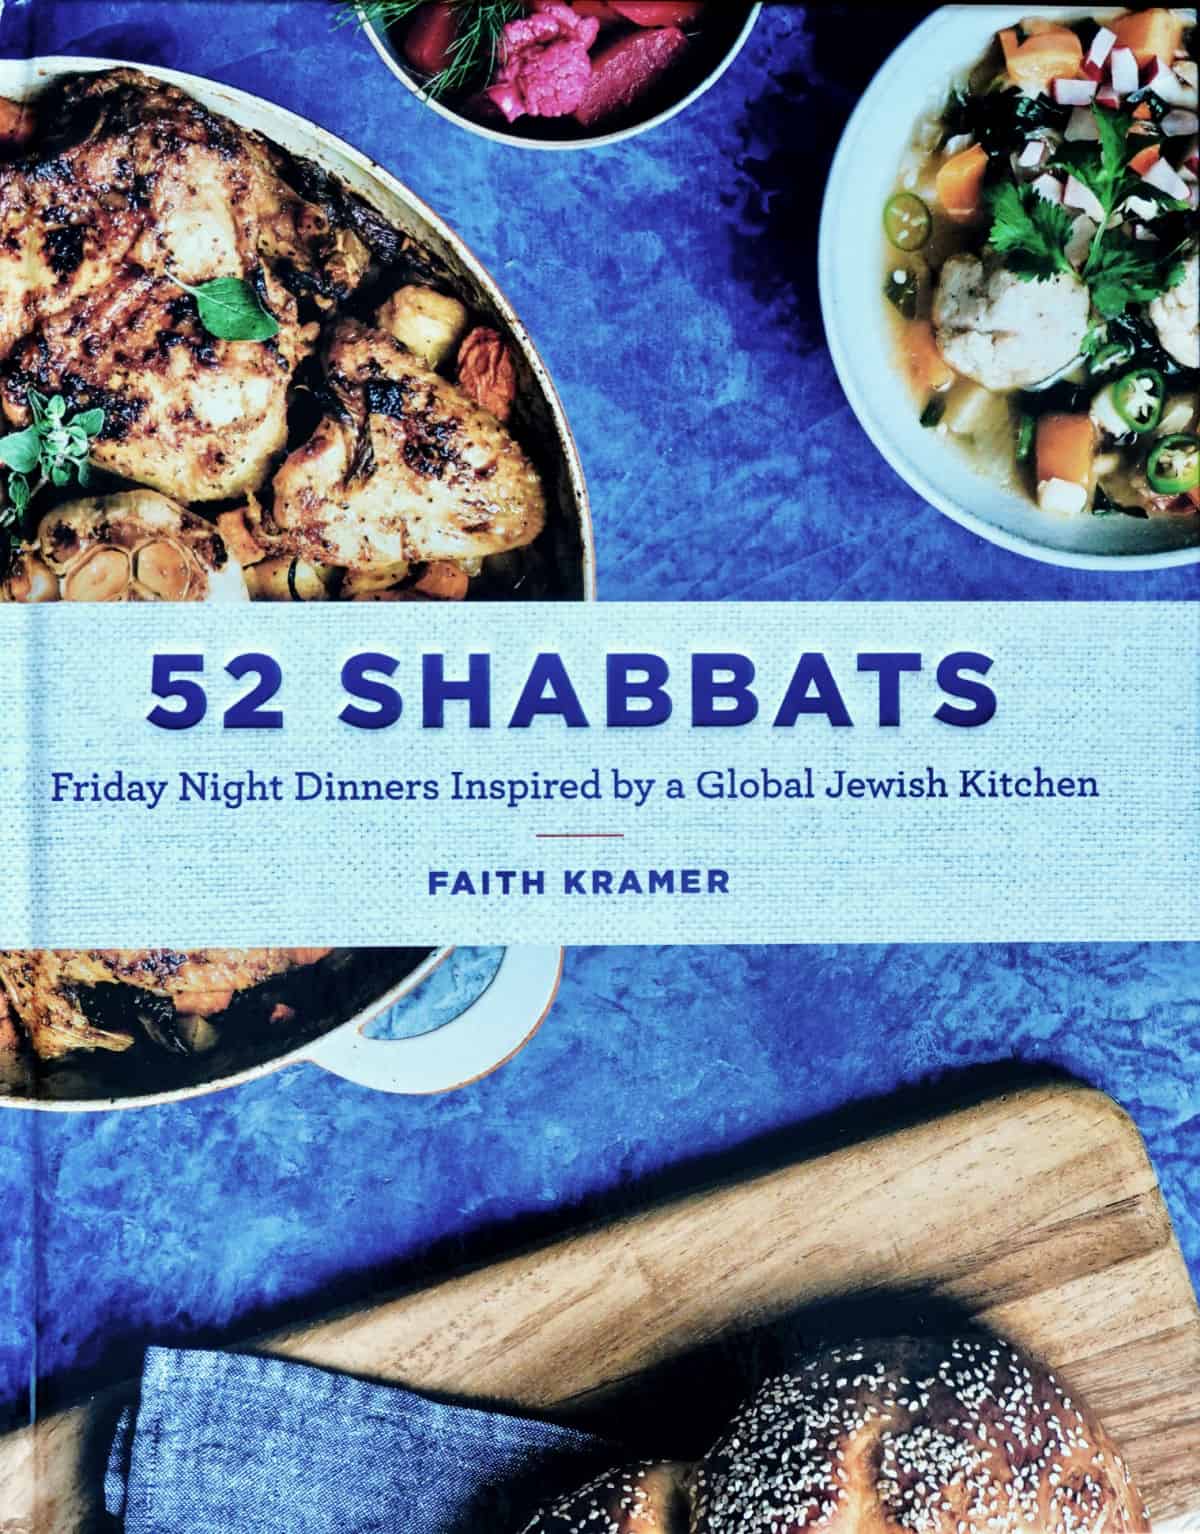 52 Shabbats book cover.